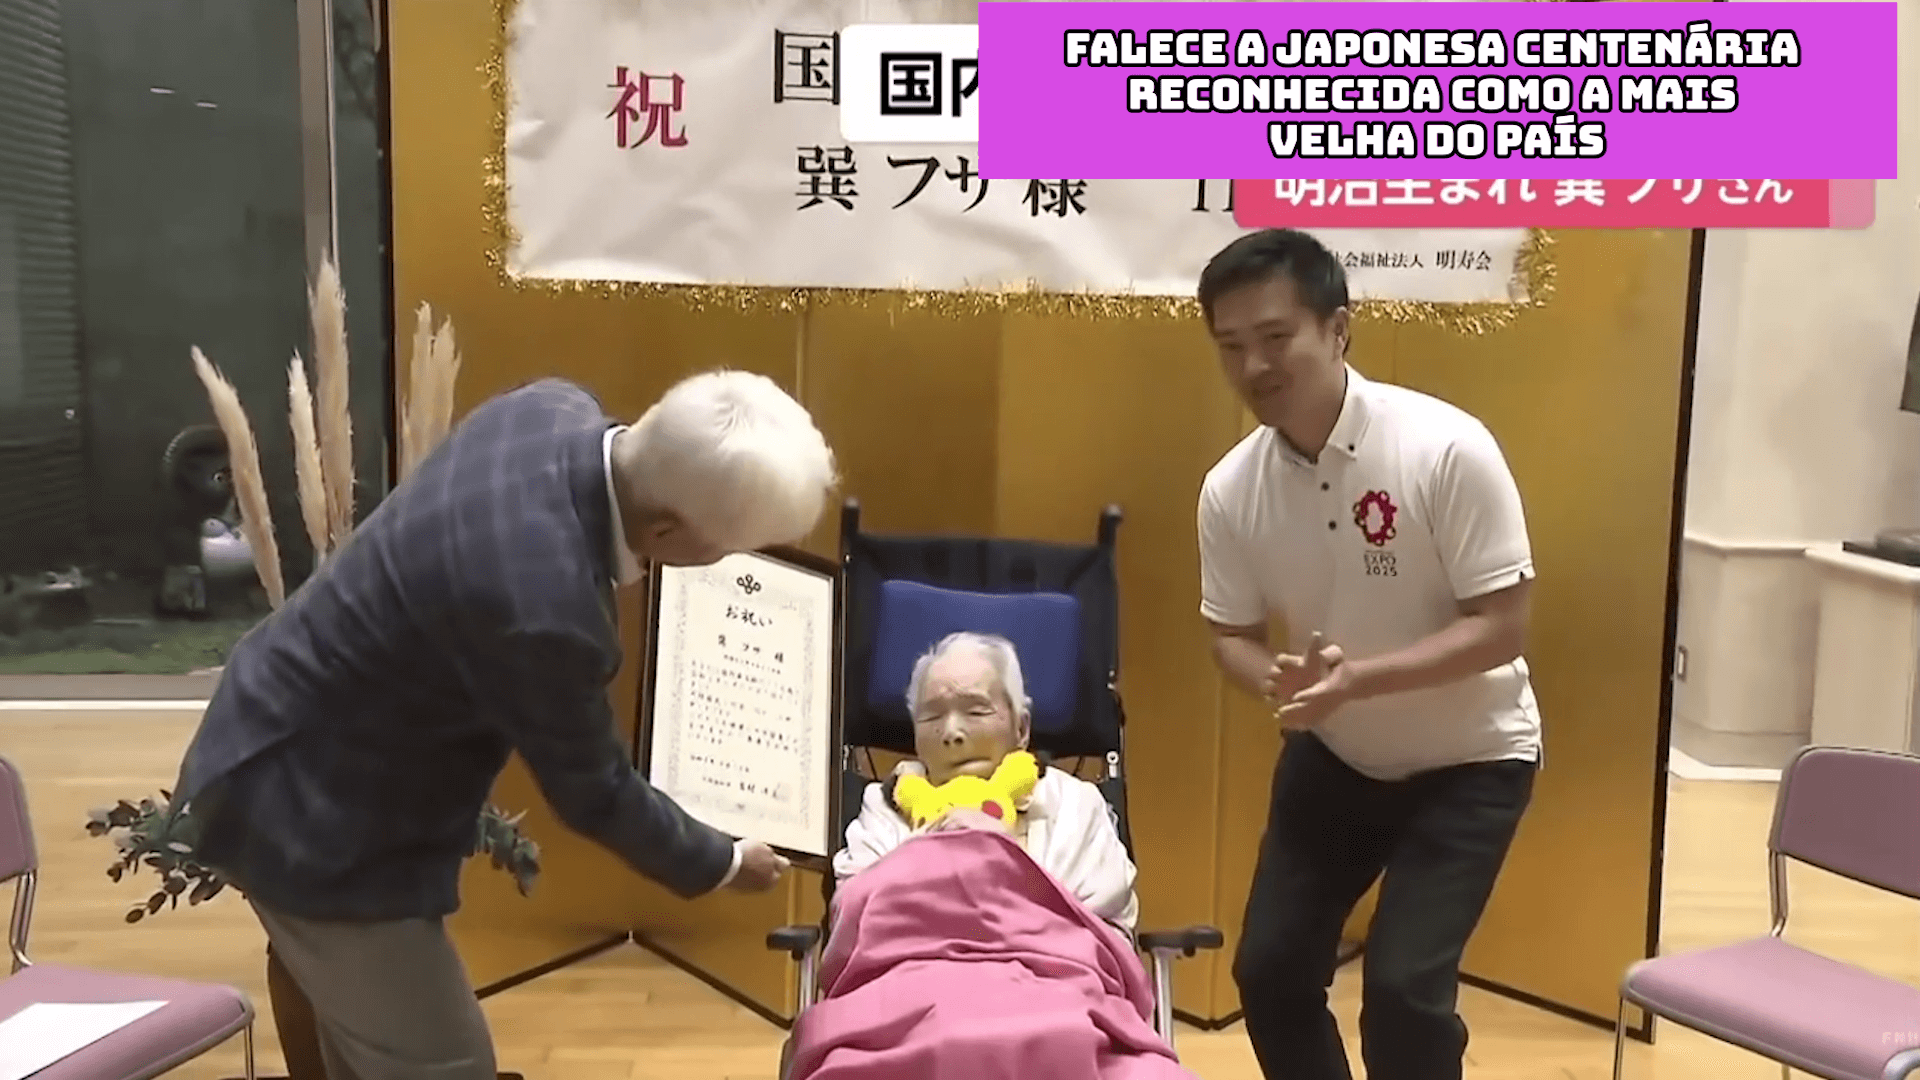 Falece a japonesa centenária reconhecida como a mais velha do país